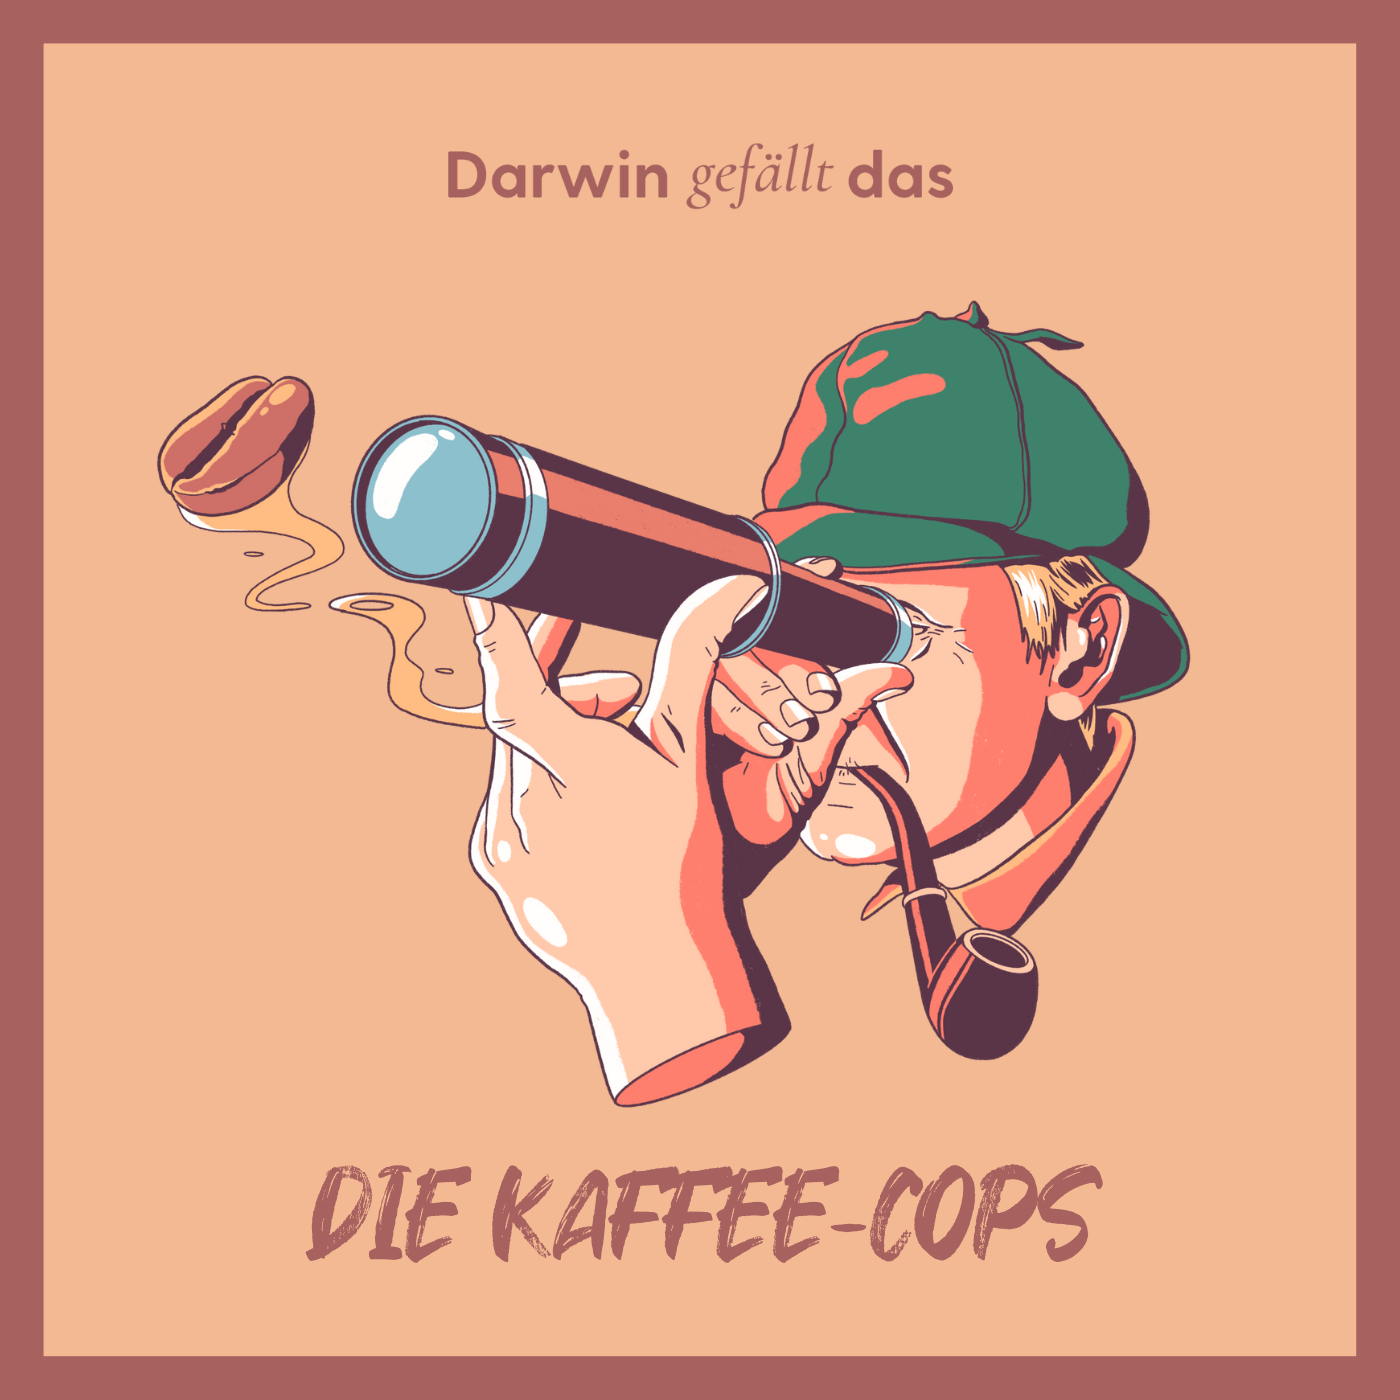 Die Kaffee-Cops